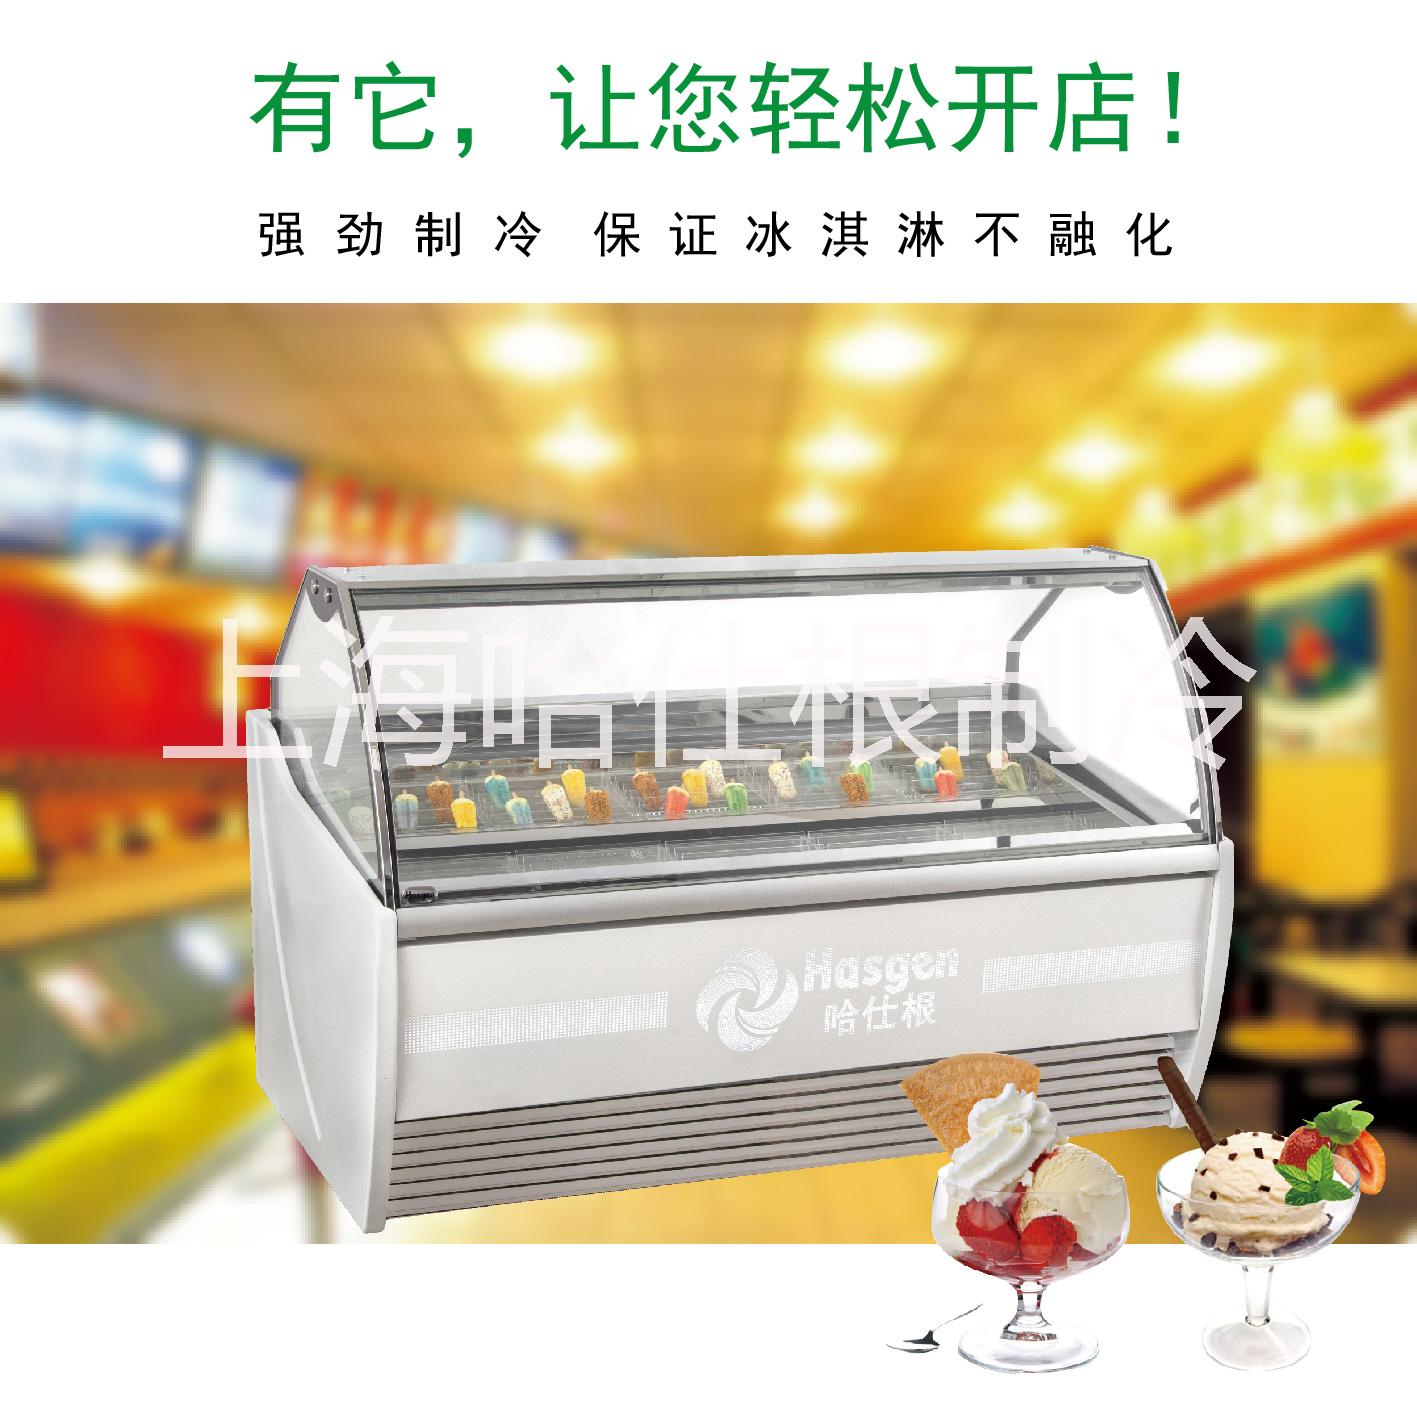 上海市1.6米哈根达斯冰淇淋展示柜厂家1.6米哈根达斯冰淇淋展示柜